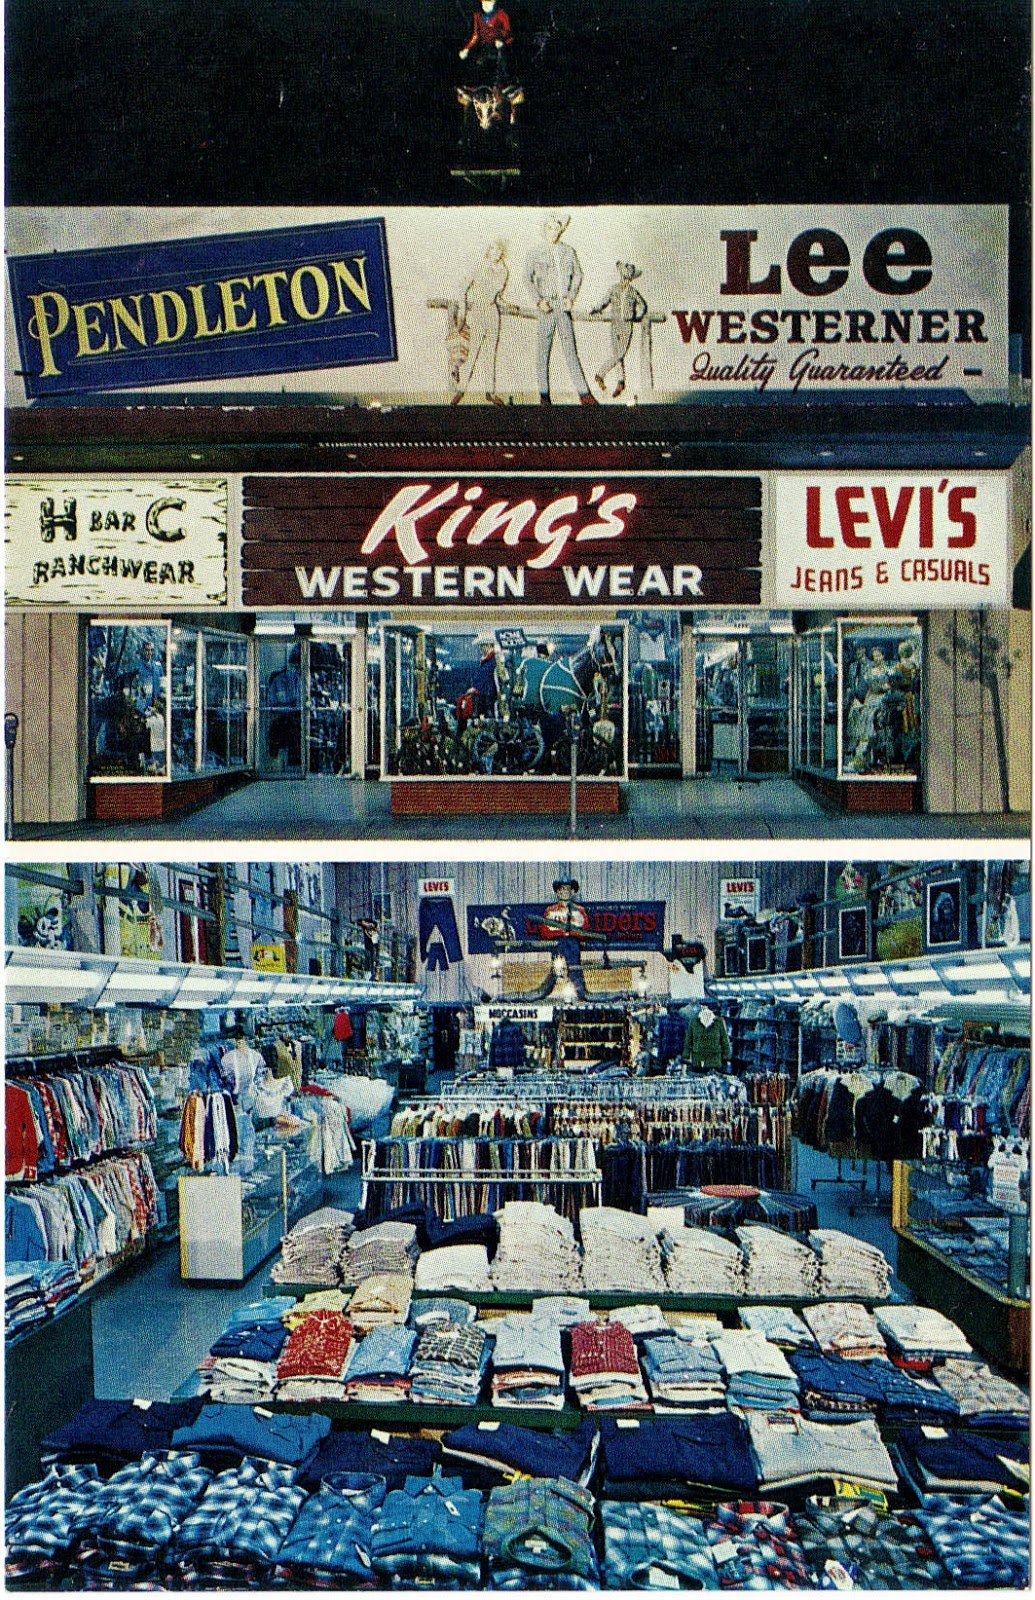 King's Western Wear in Van Nuys Postcard | San Fernando Valley Blog